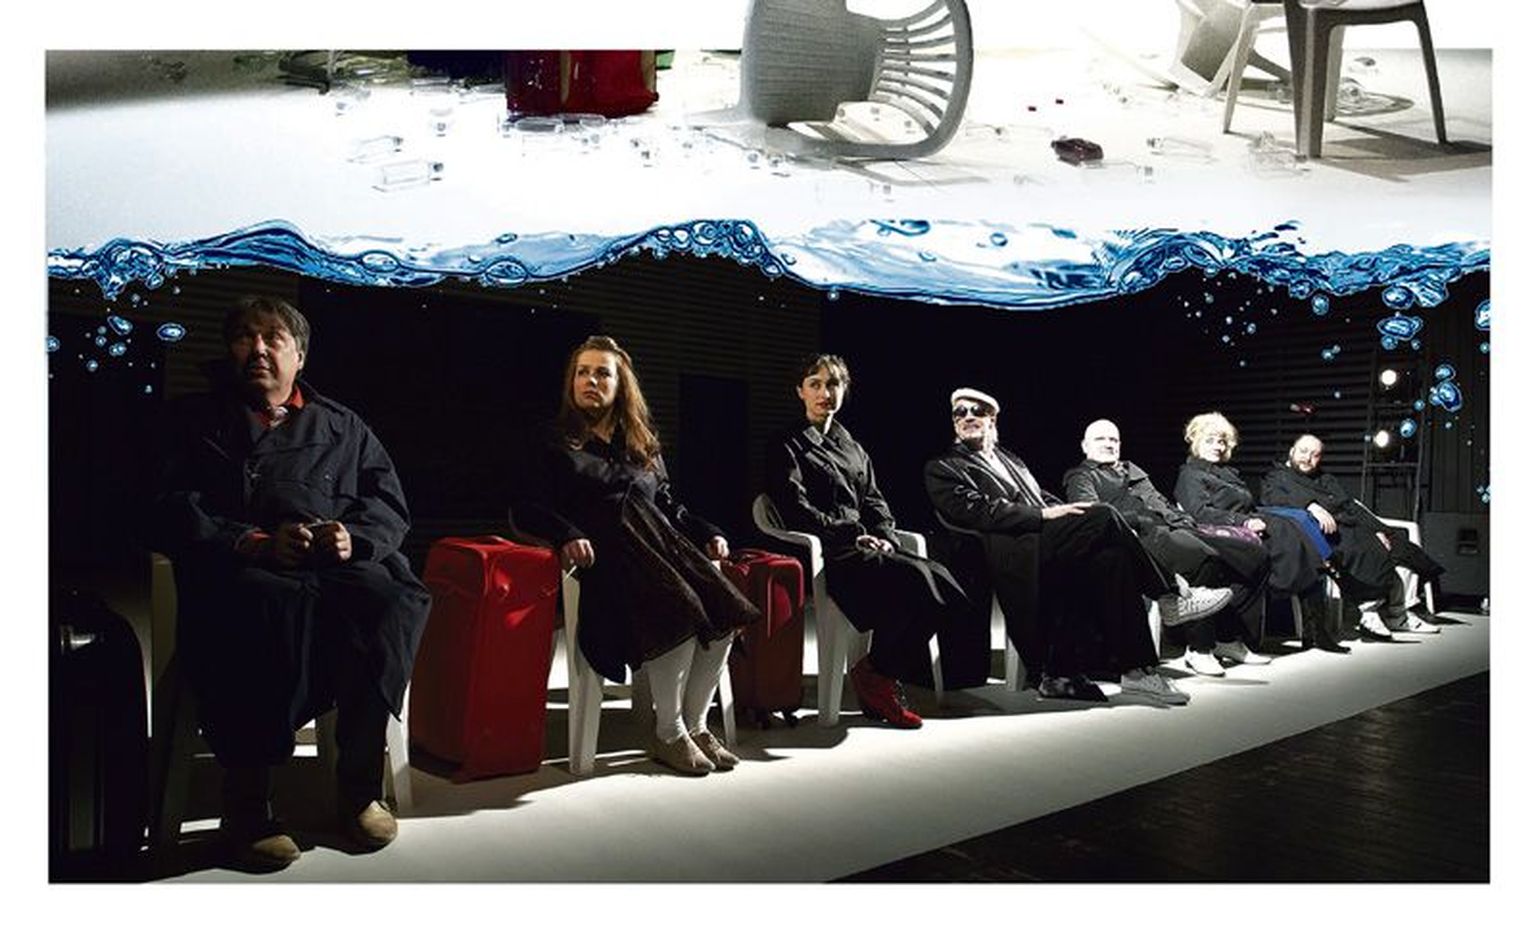 Steriilsetel plasttoolidel istudes ootavad reisijad, mis tulevik toob. Rollides Eduard Salmistu (vasakult), Anneli Rahkema, Natali Lohk, Toomas Suuman, Tarmo Tagamets, Kaili Närep ja Peeter Rästas.